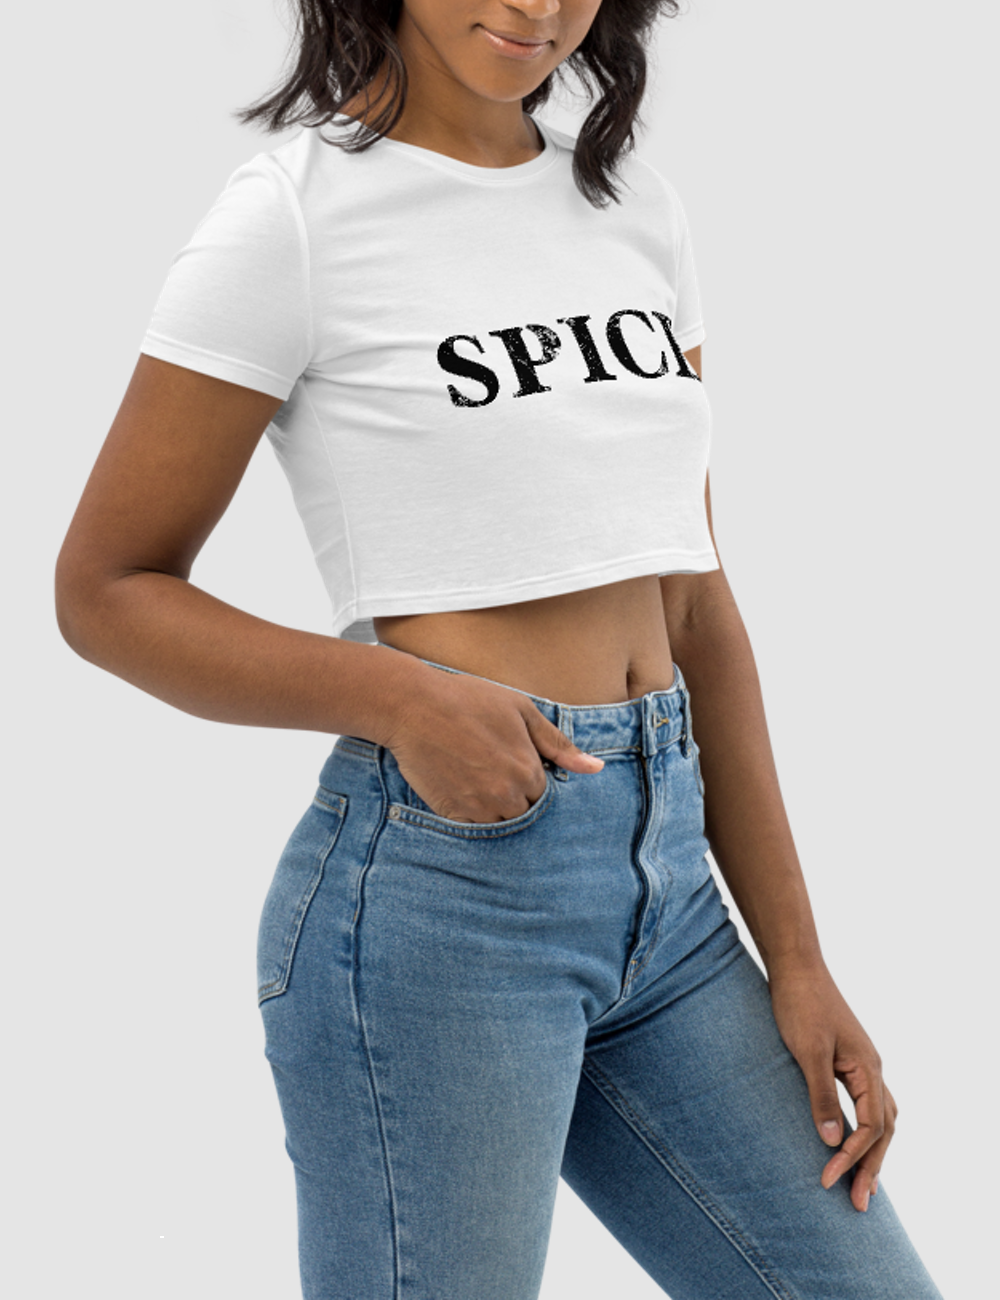 Spice | Women's Crop Top T-Shirt OniTakai